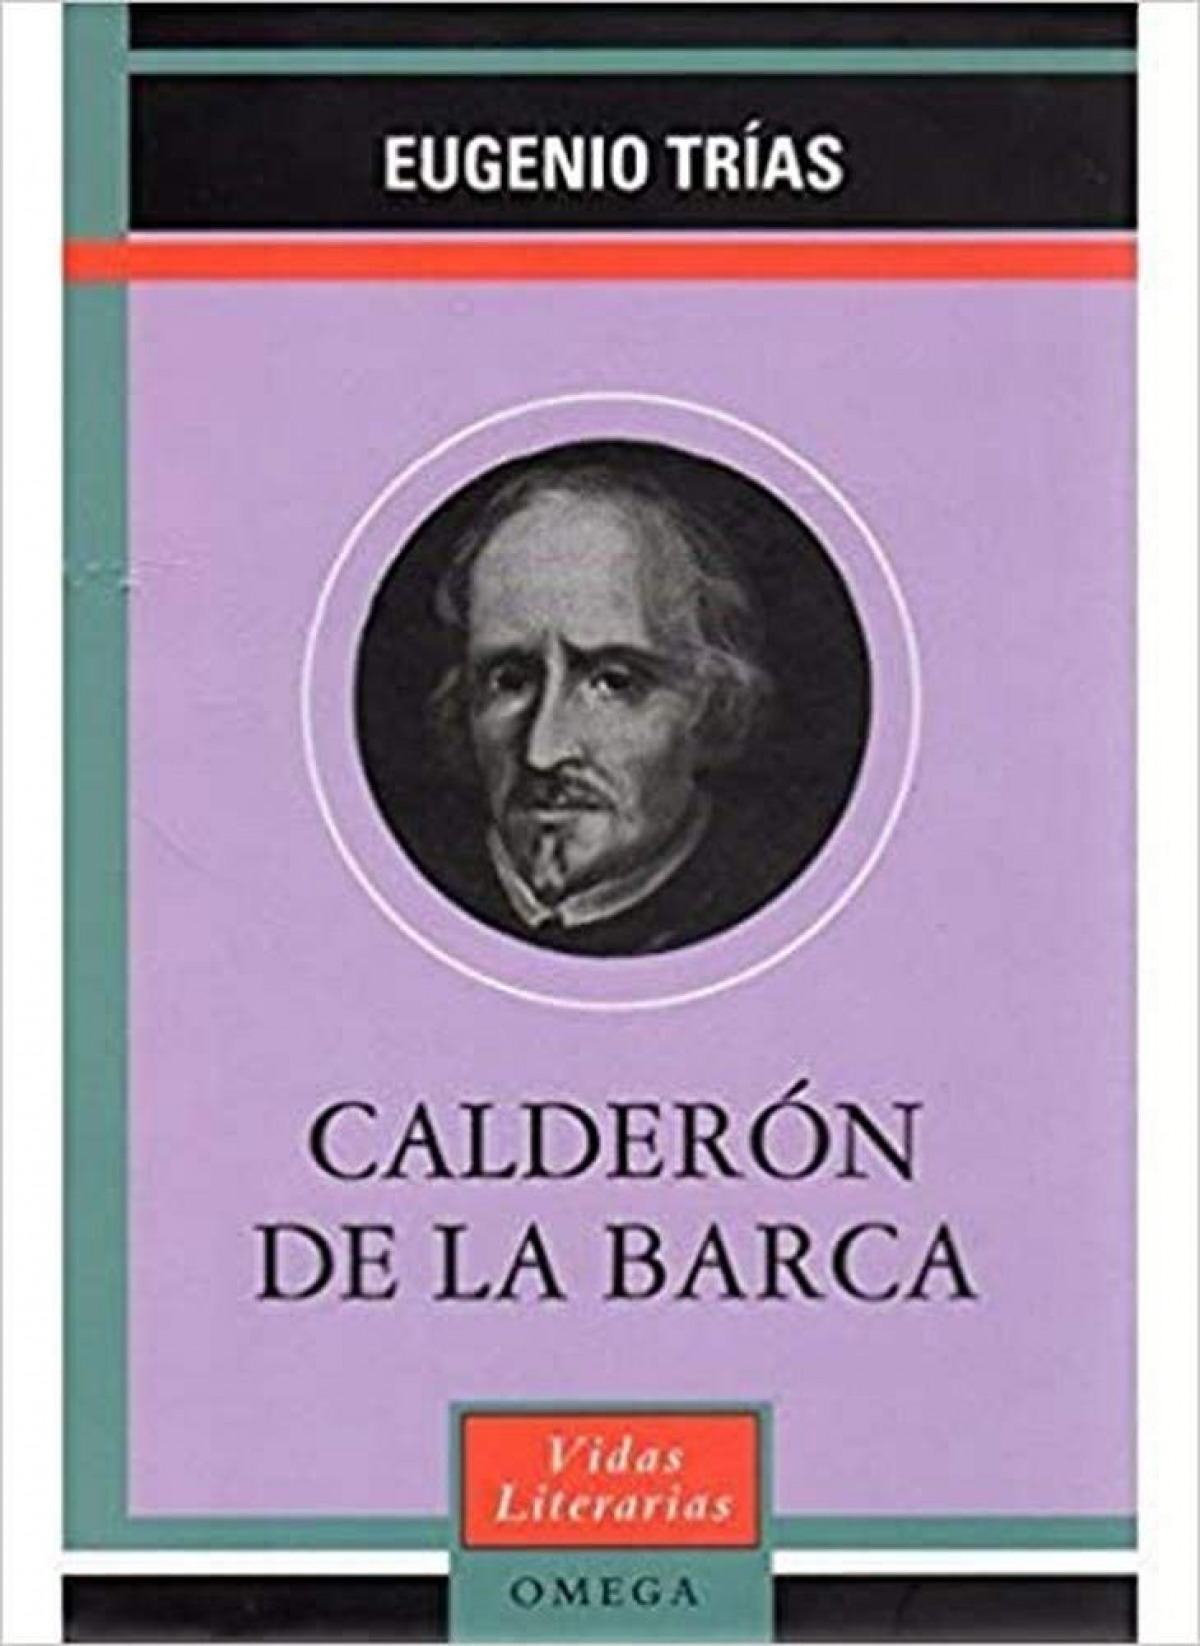 Calderon de la barca - Eugenio Trias